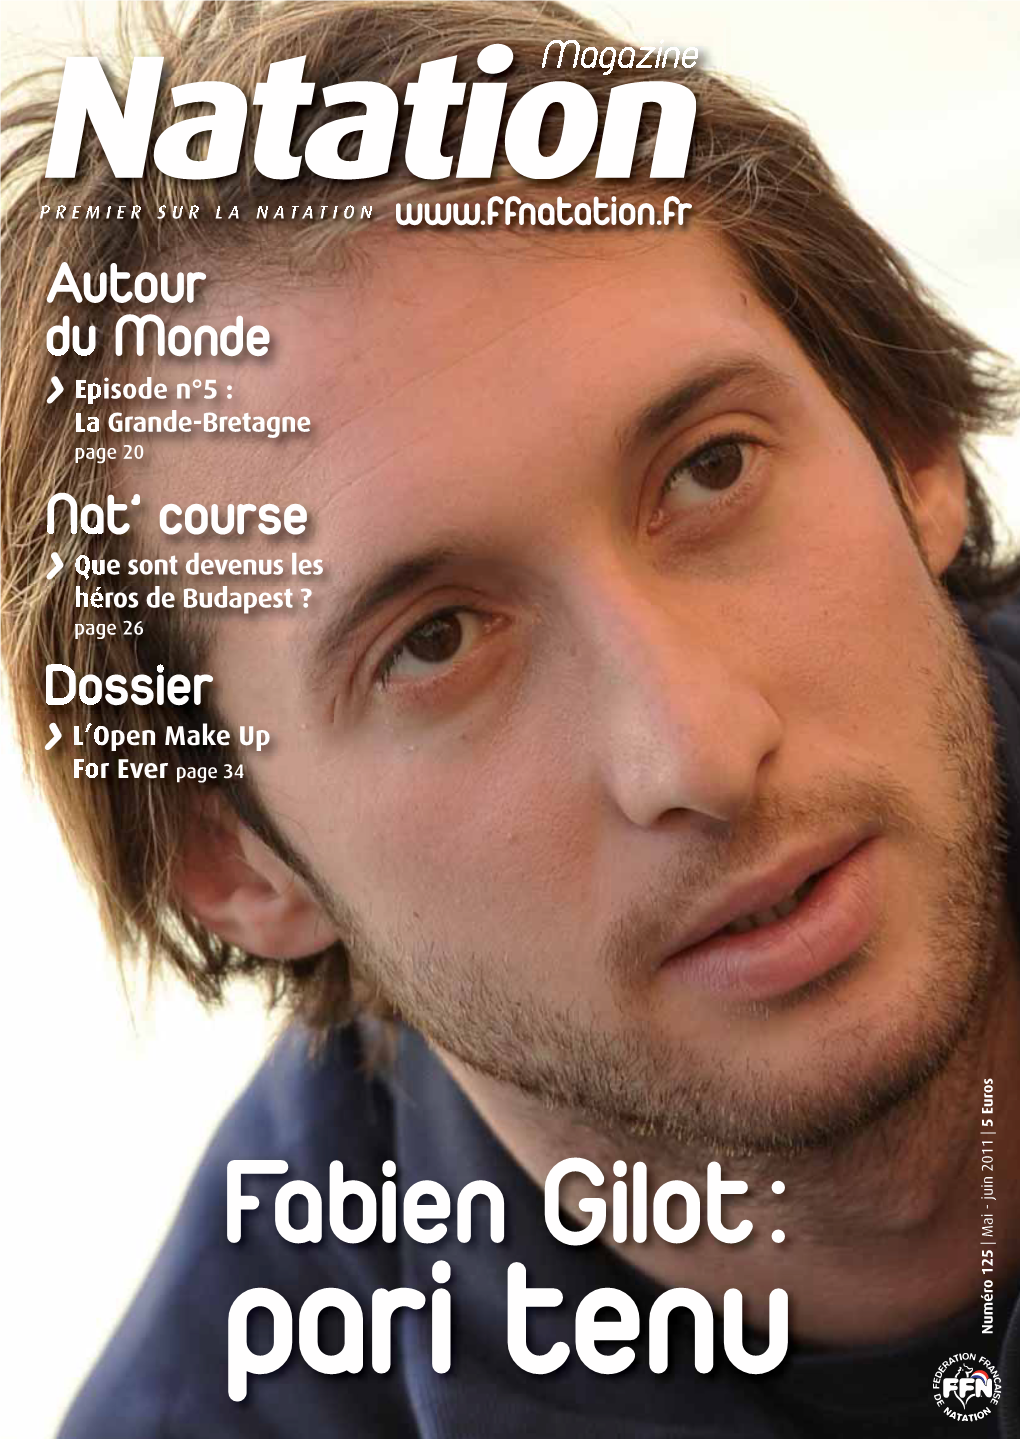 Natation Magazine N°126 (Mai-Juin 2011) • Edité Par La FFN, TOUR ESSOR 93, 14 Rue Scandicci, 93 508 PANTIN – Tél